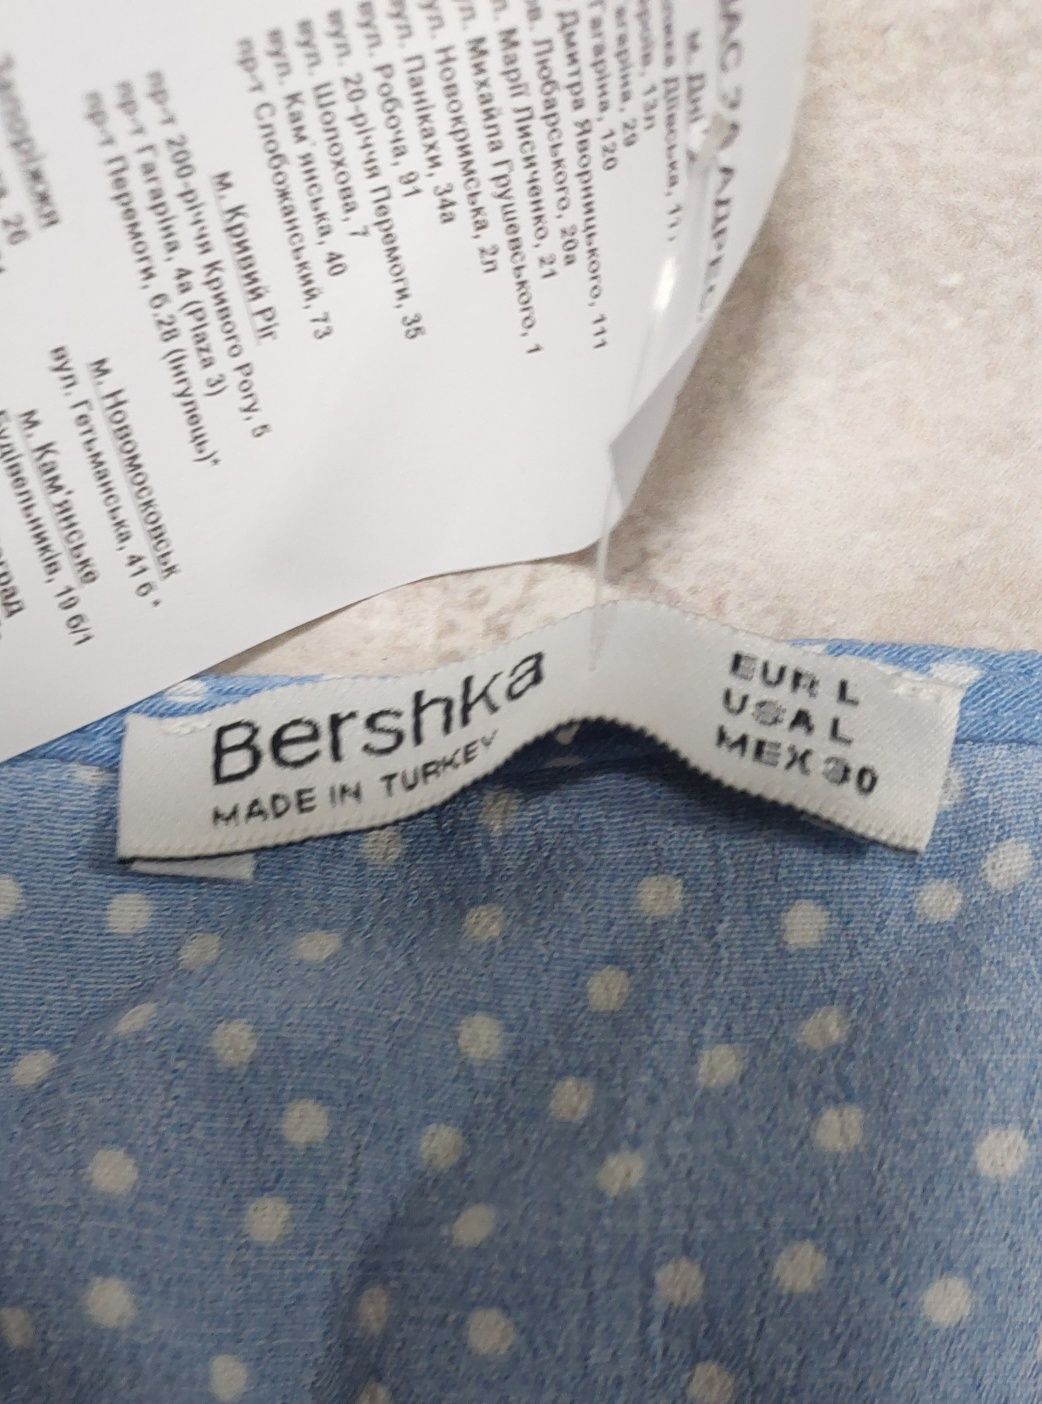 Блуза голубого цвета в горошек фирма Bershka.